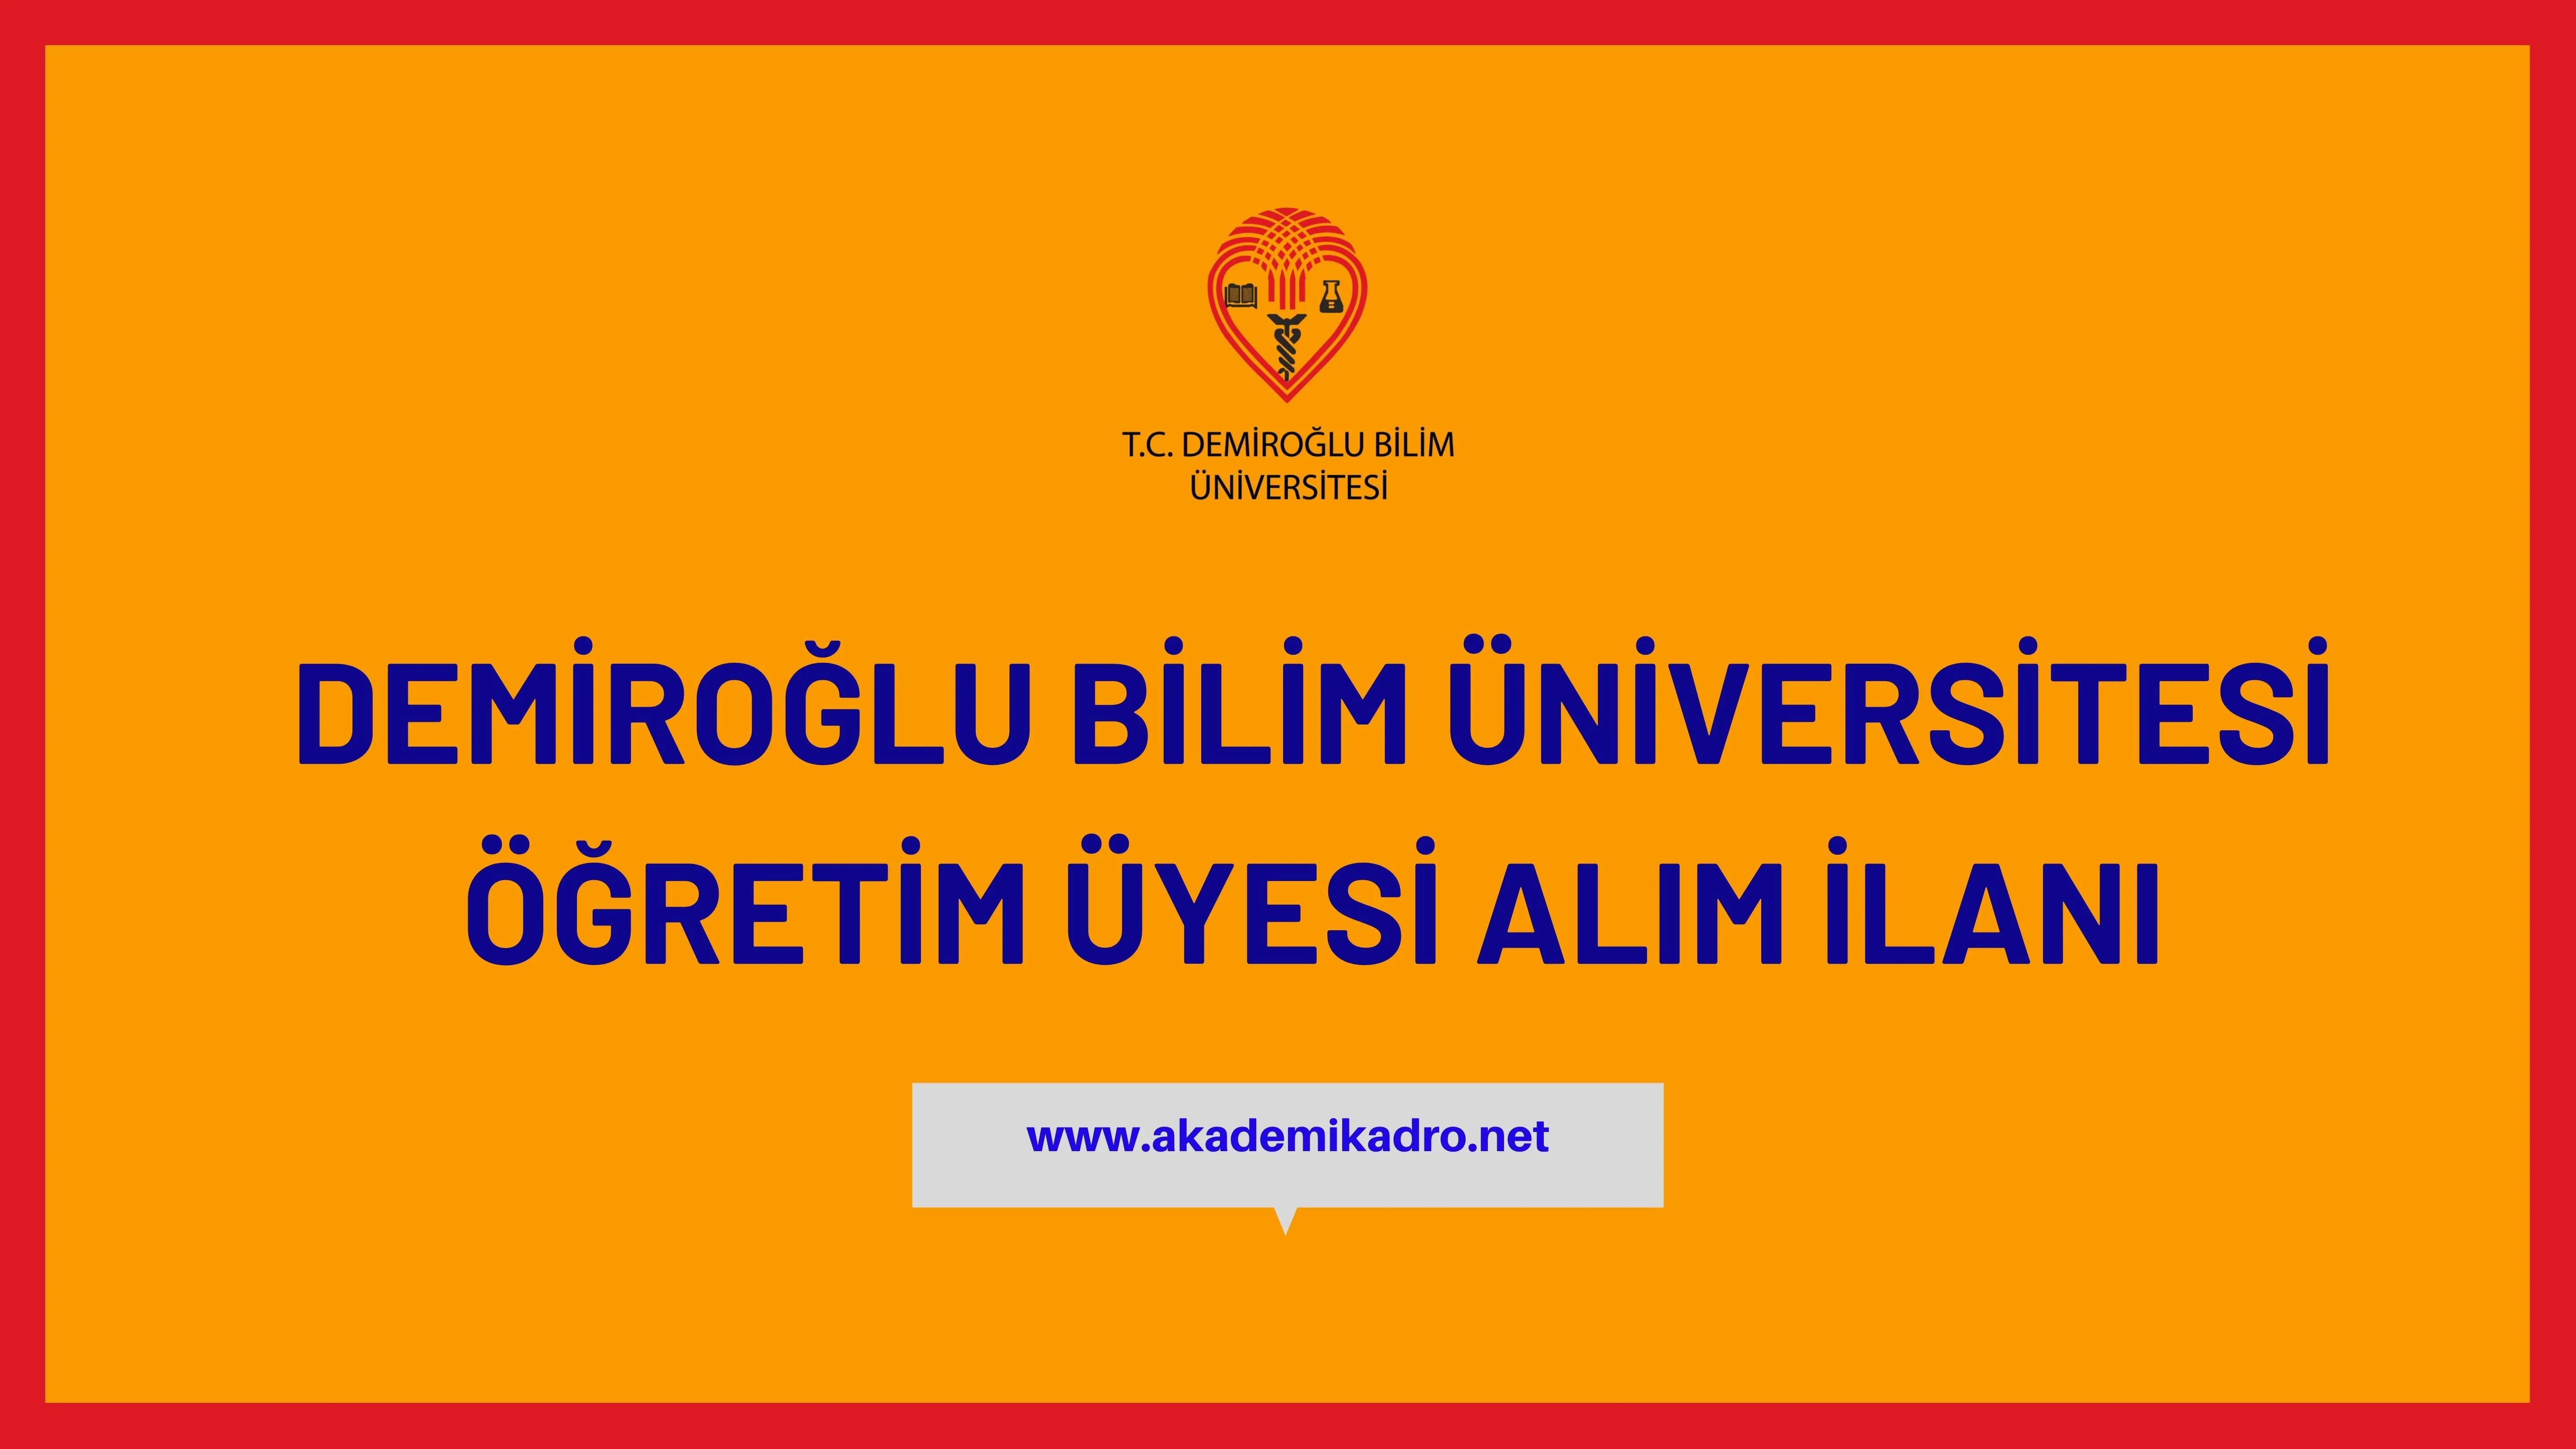 Demiroğlu Bilim Üniversitesi çeşitli branşlarda 6 öğretim üyesi alacak.